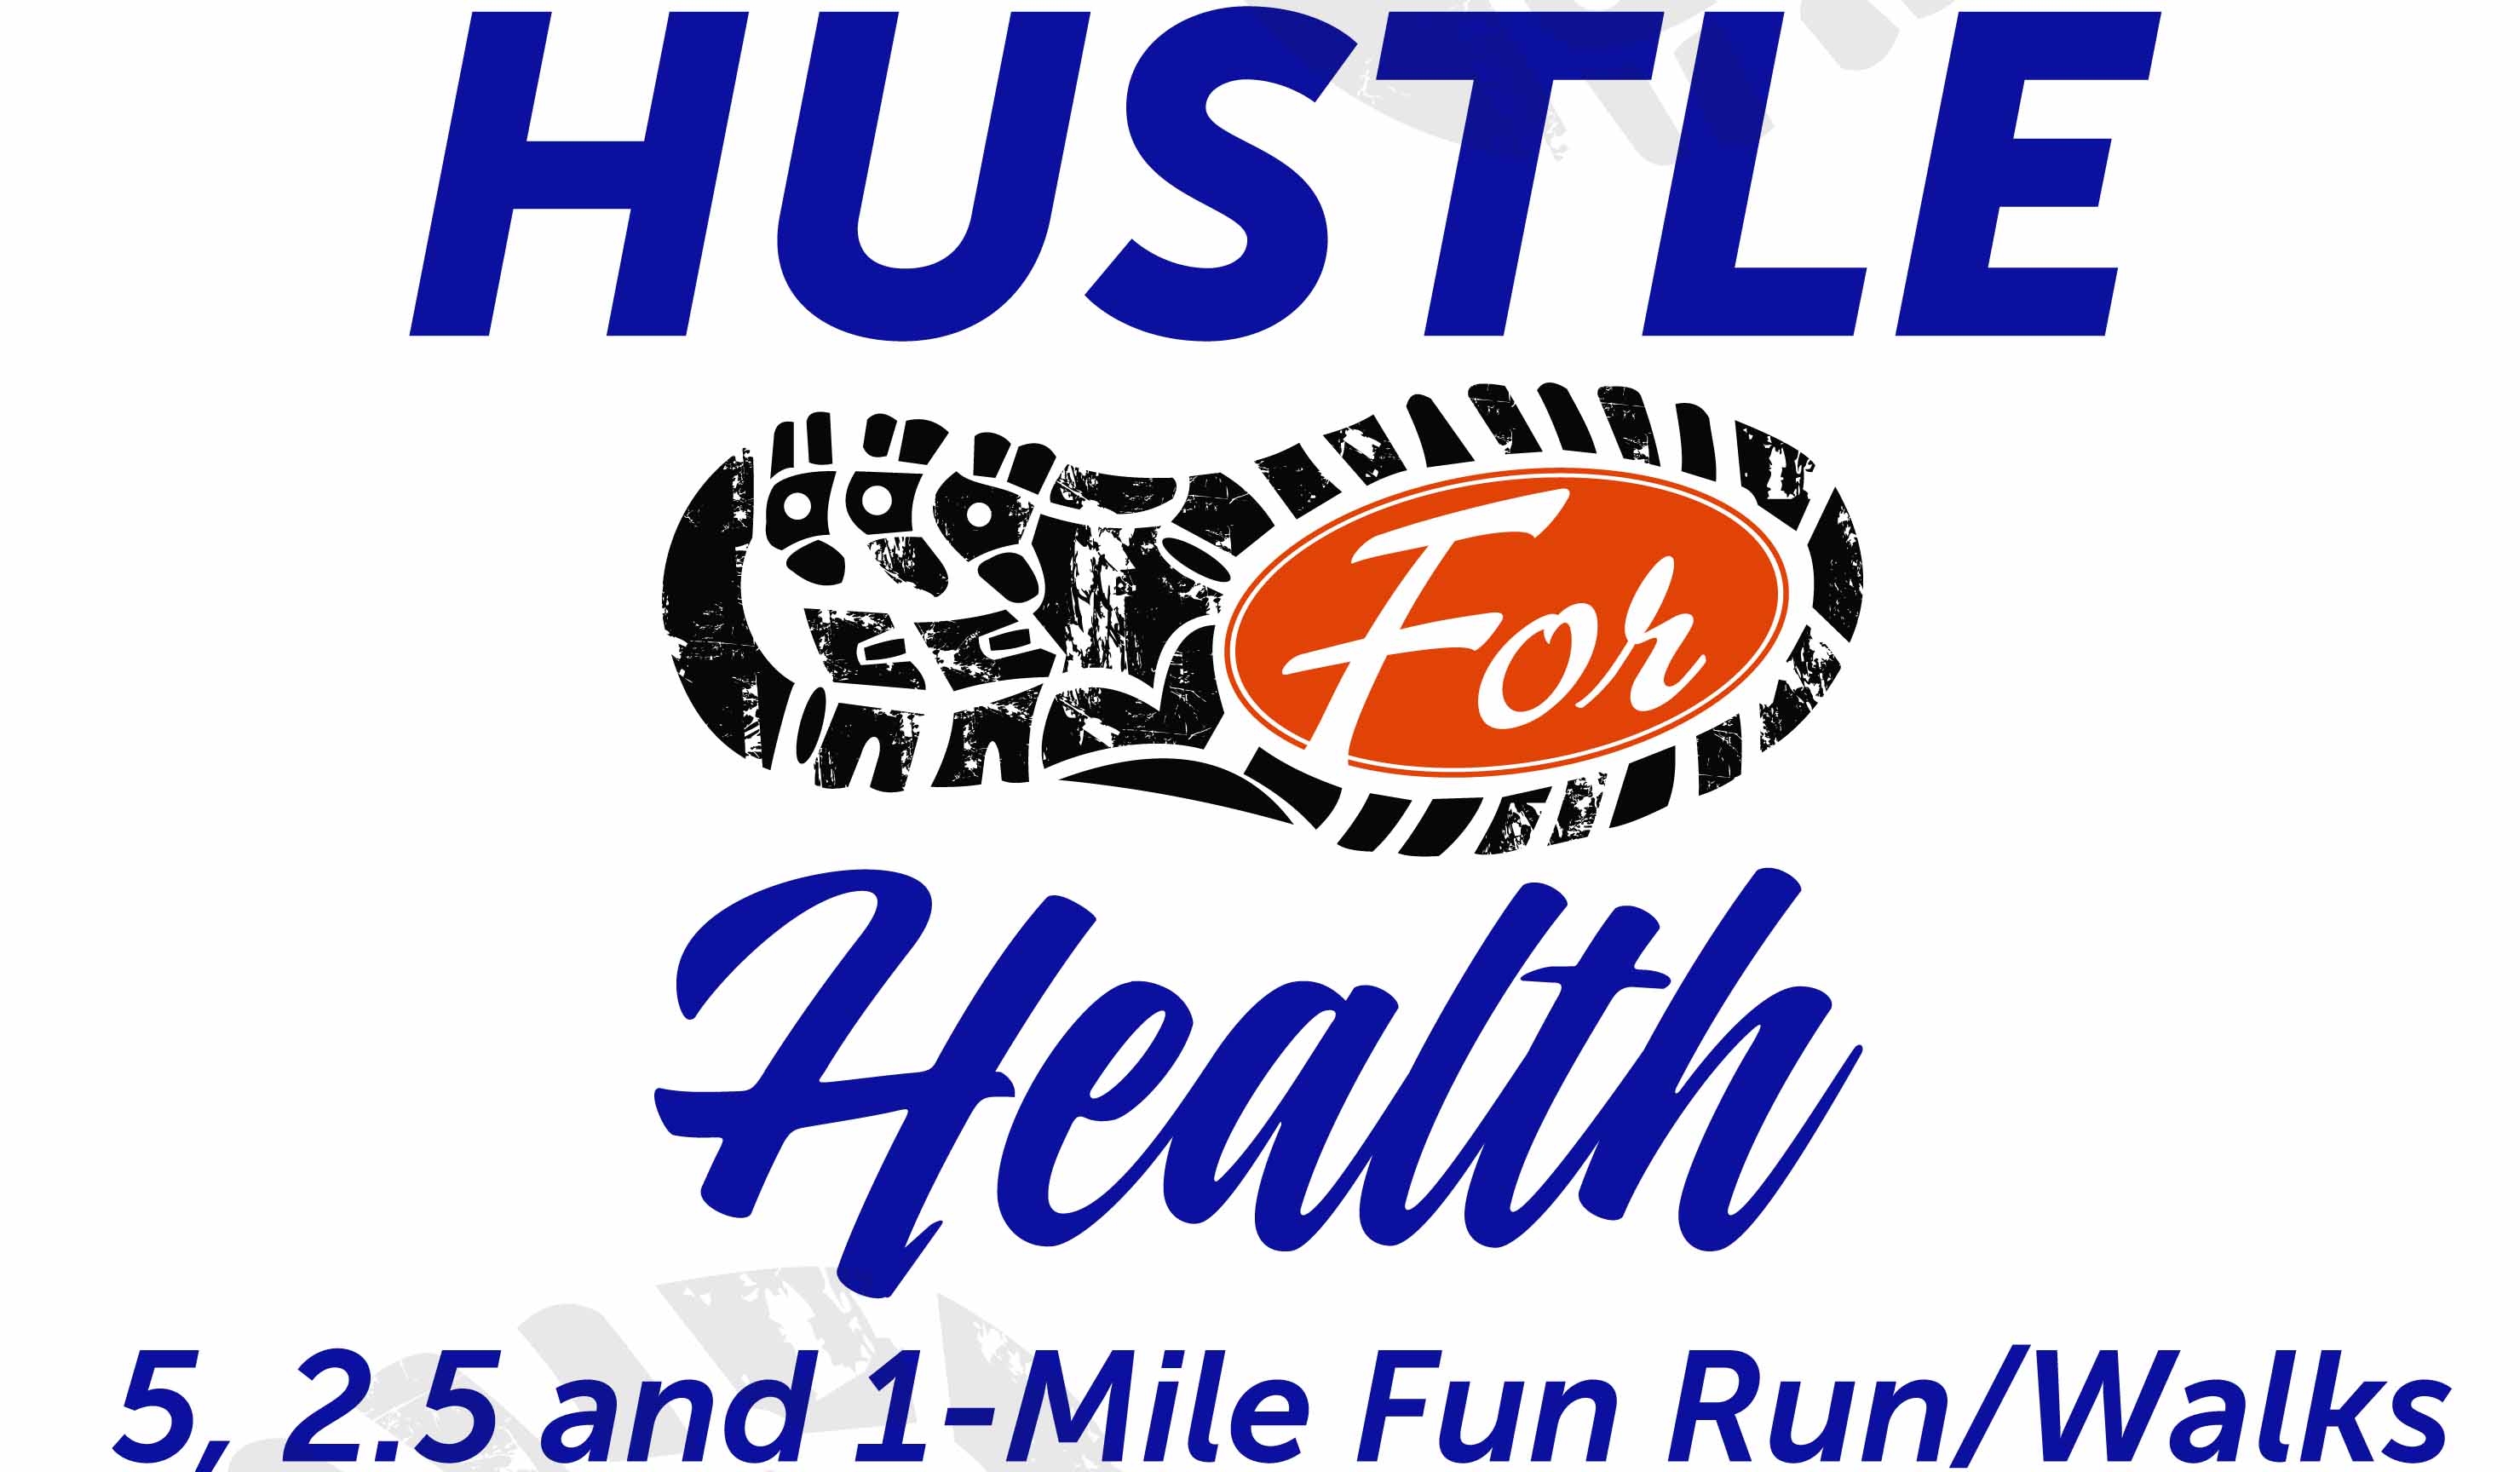 Register for 2018 Hustle for Health 1 Mile